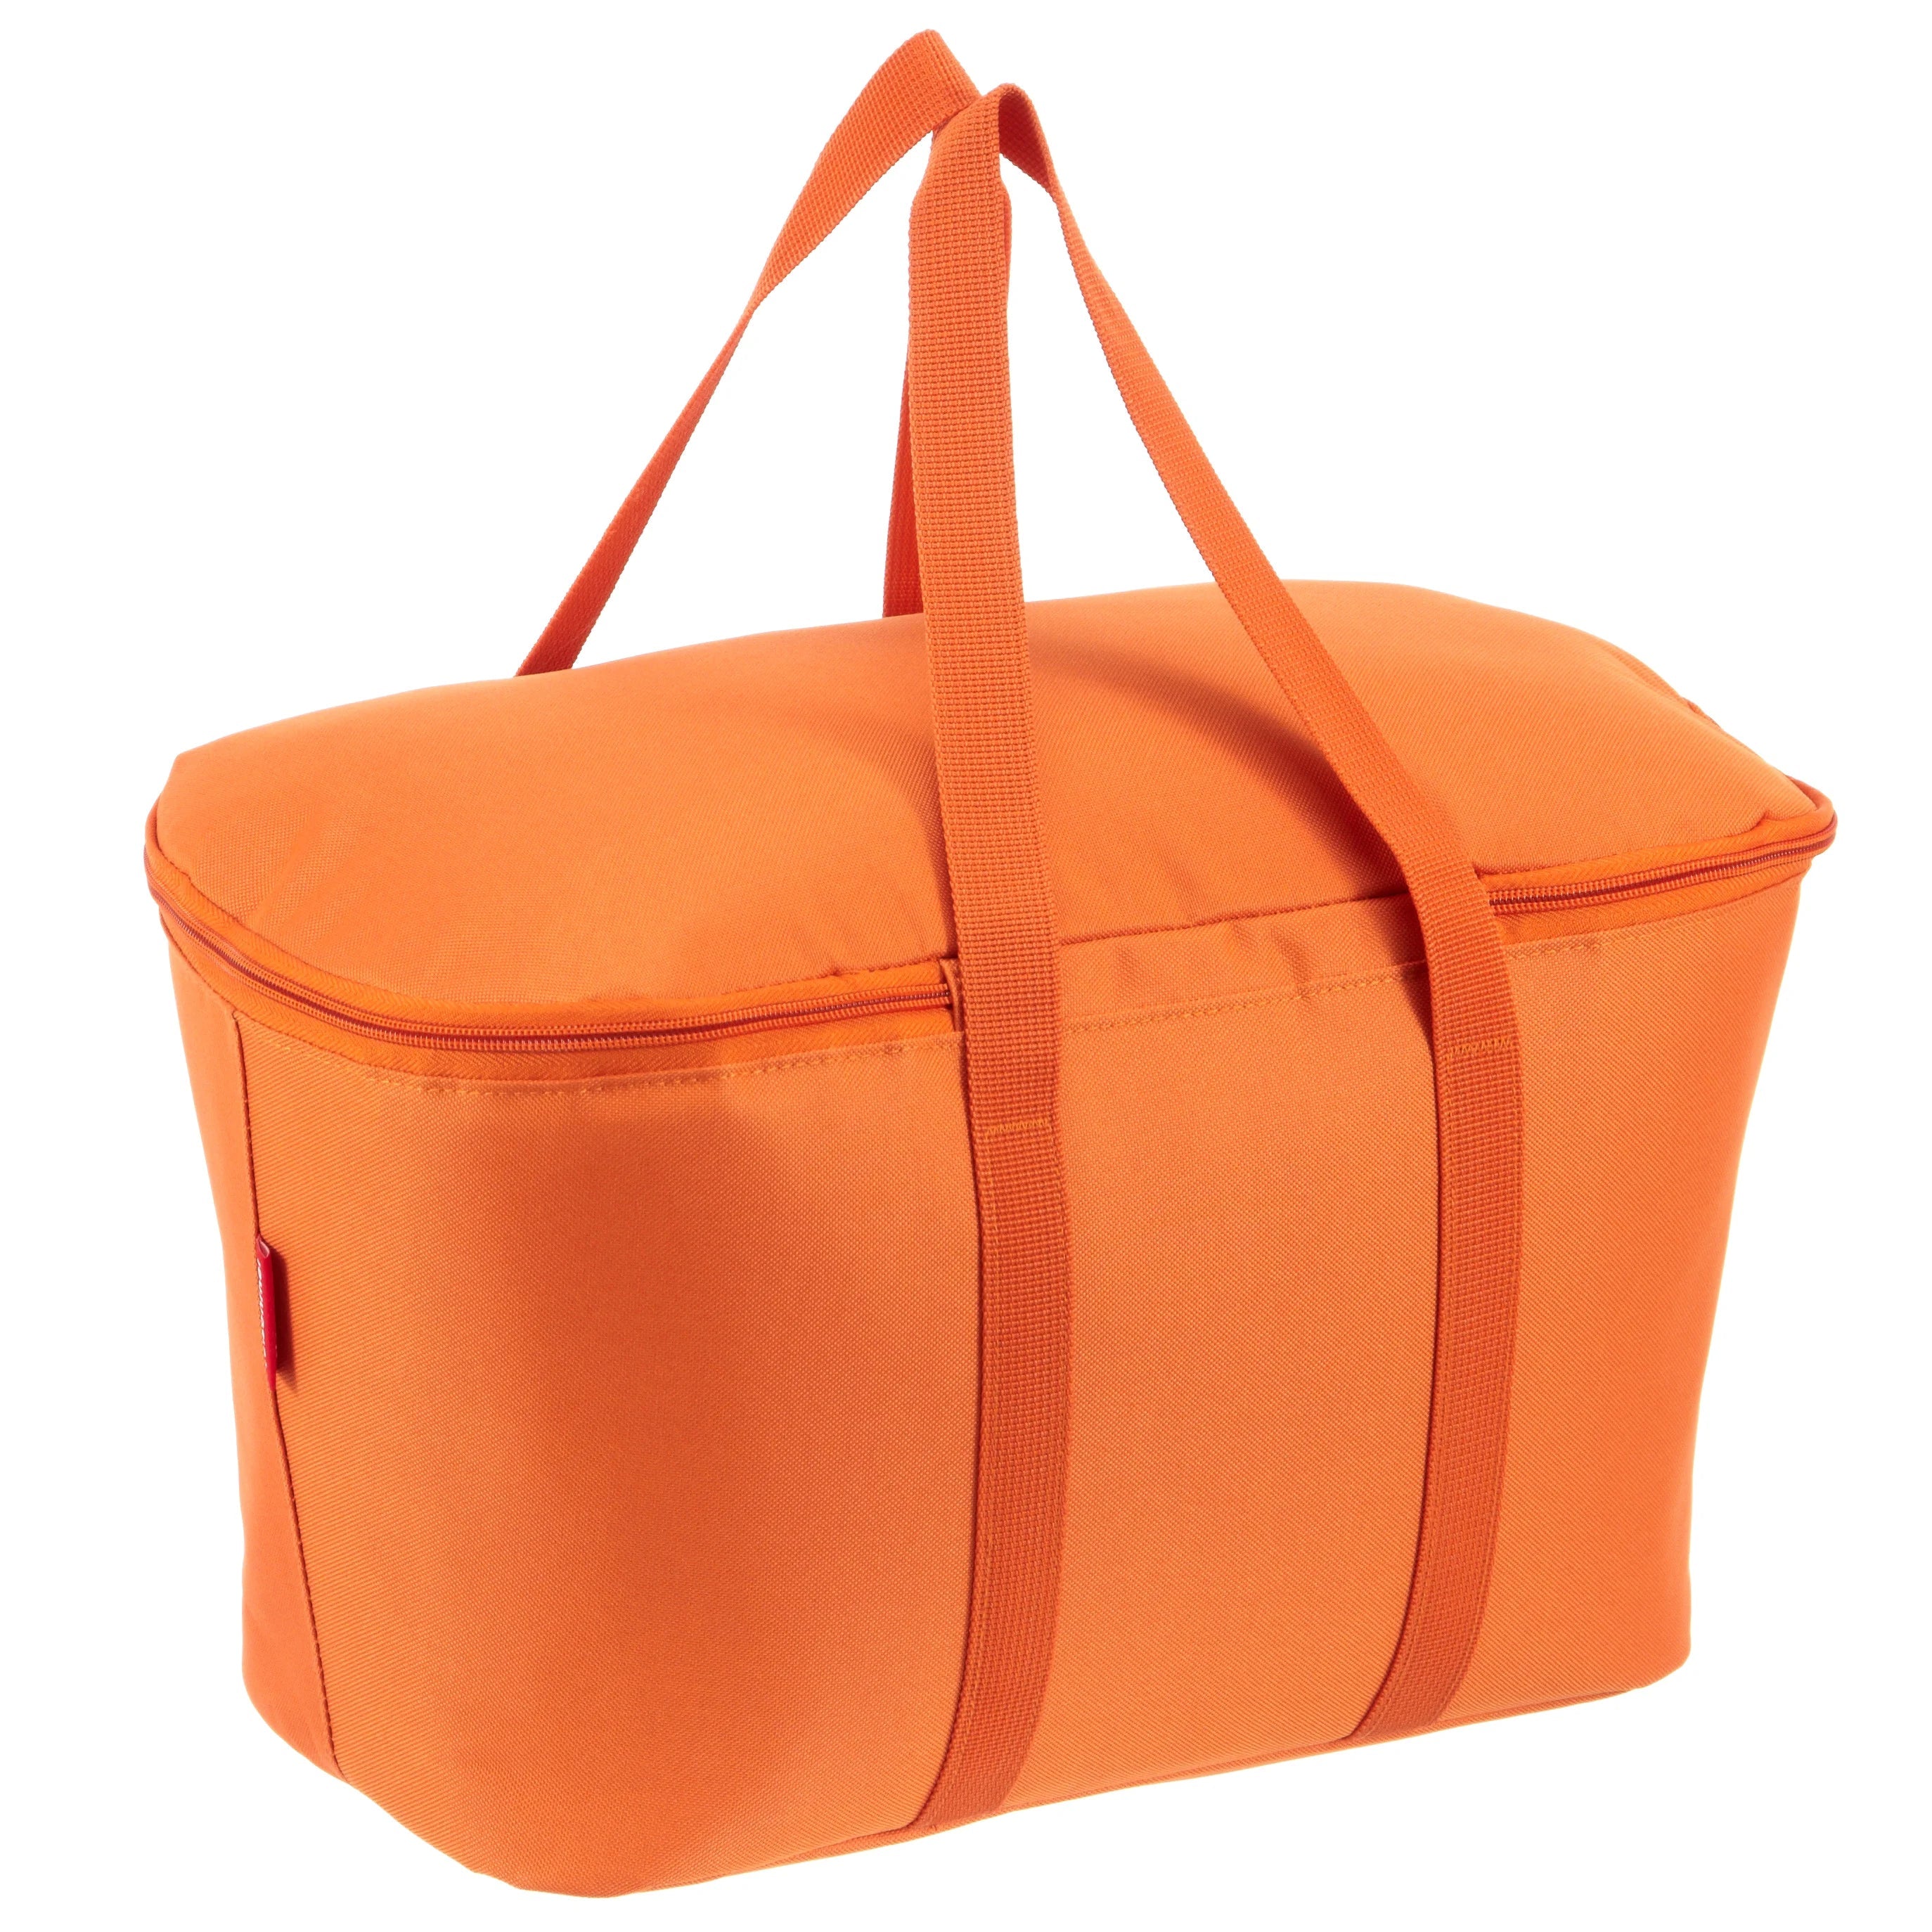 Reisenthel Shopping Coolerbag Kühltasche 44 cm - Twist Apricot